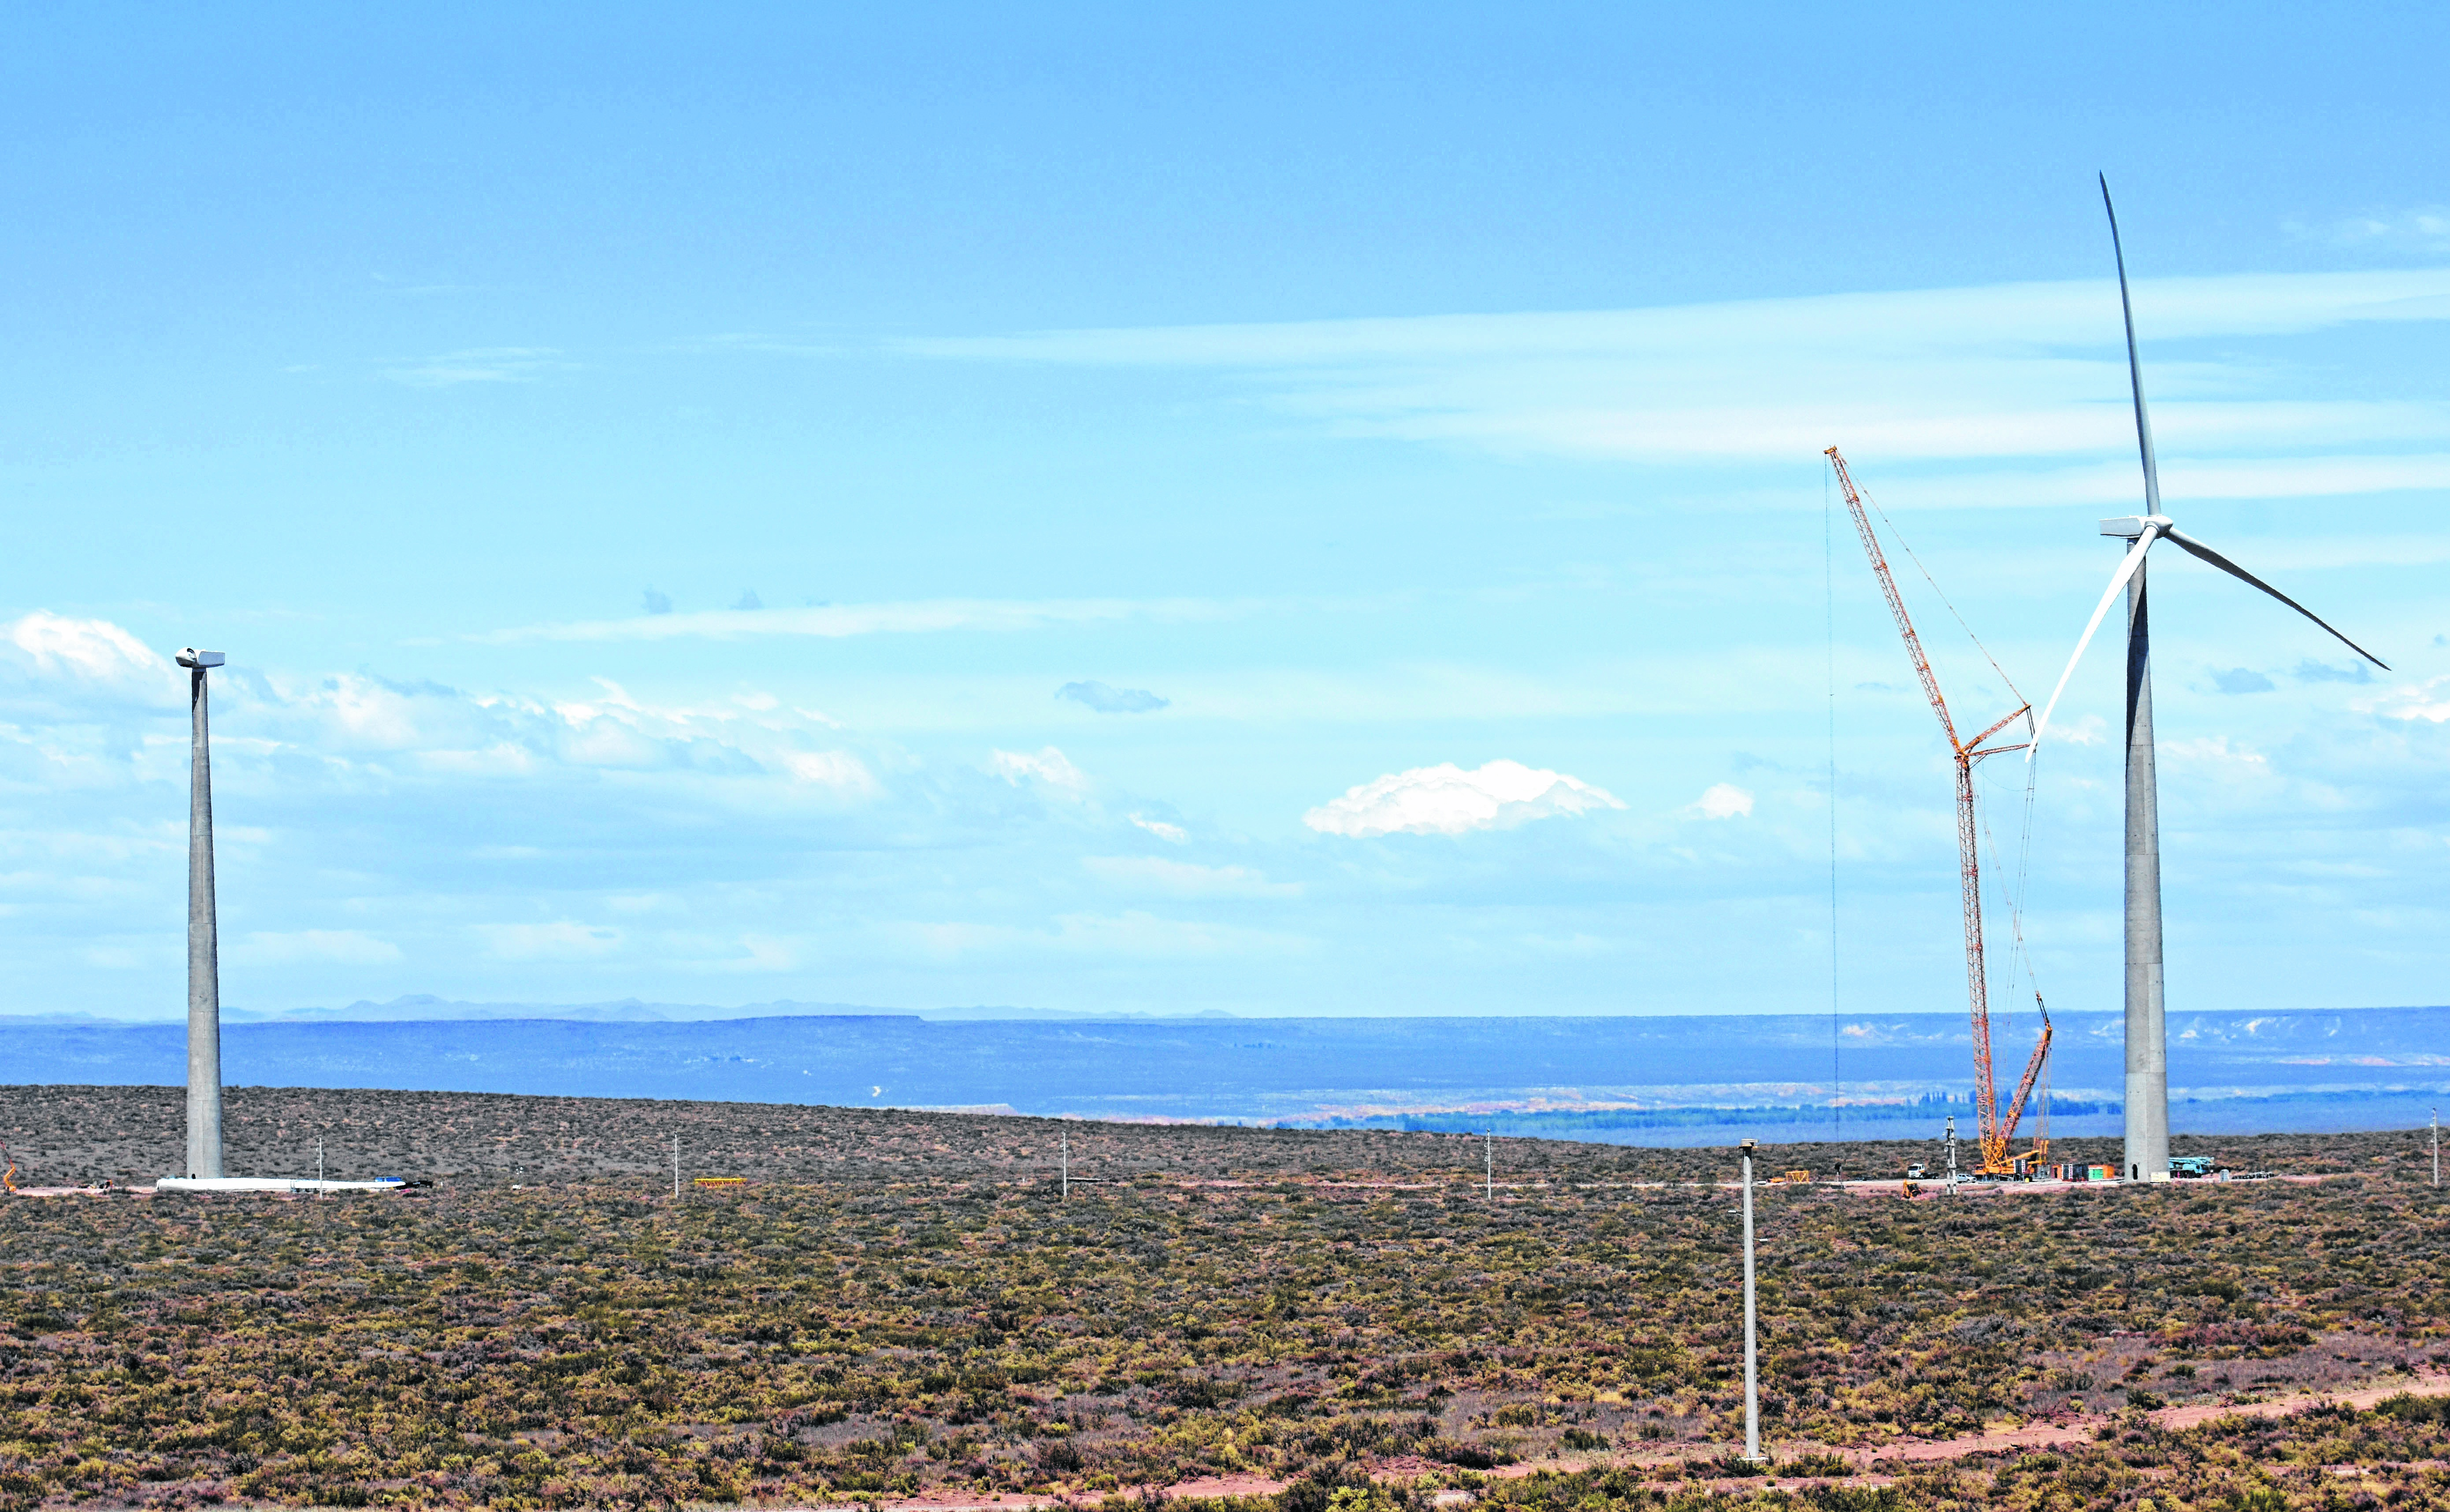 La capacidad instalada del parque éolico Vientos Neuquinos I es de 100,49 MW. (Foto: archivo)